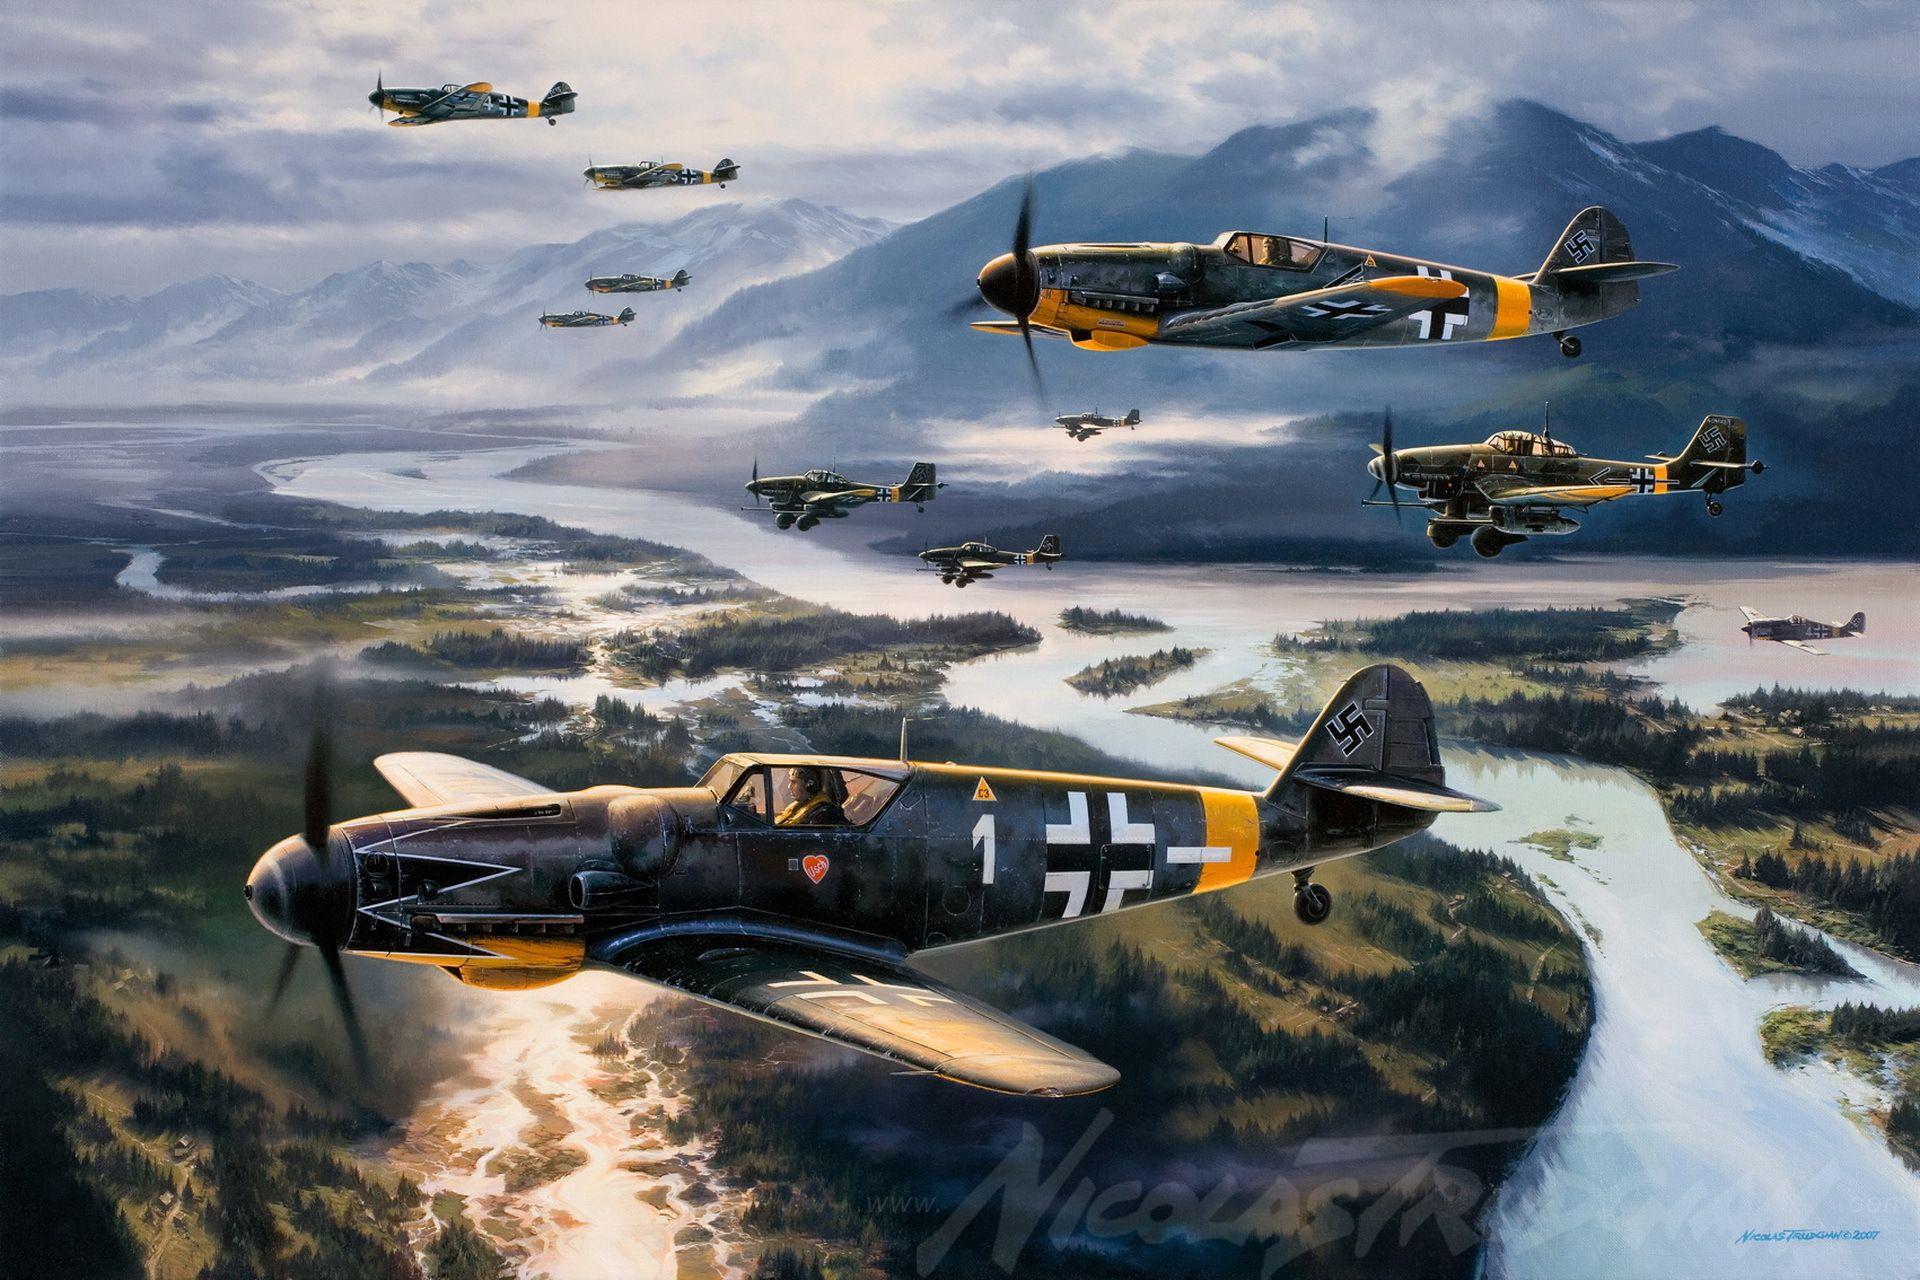 Top HD Bf 109 Wallpaper. Avia & vessels HD.29 KB